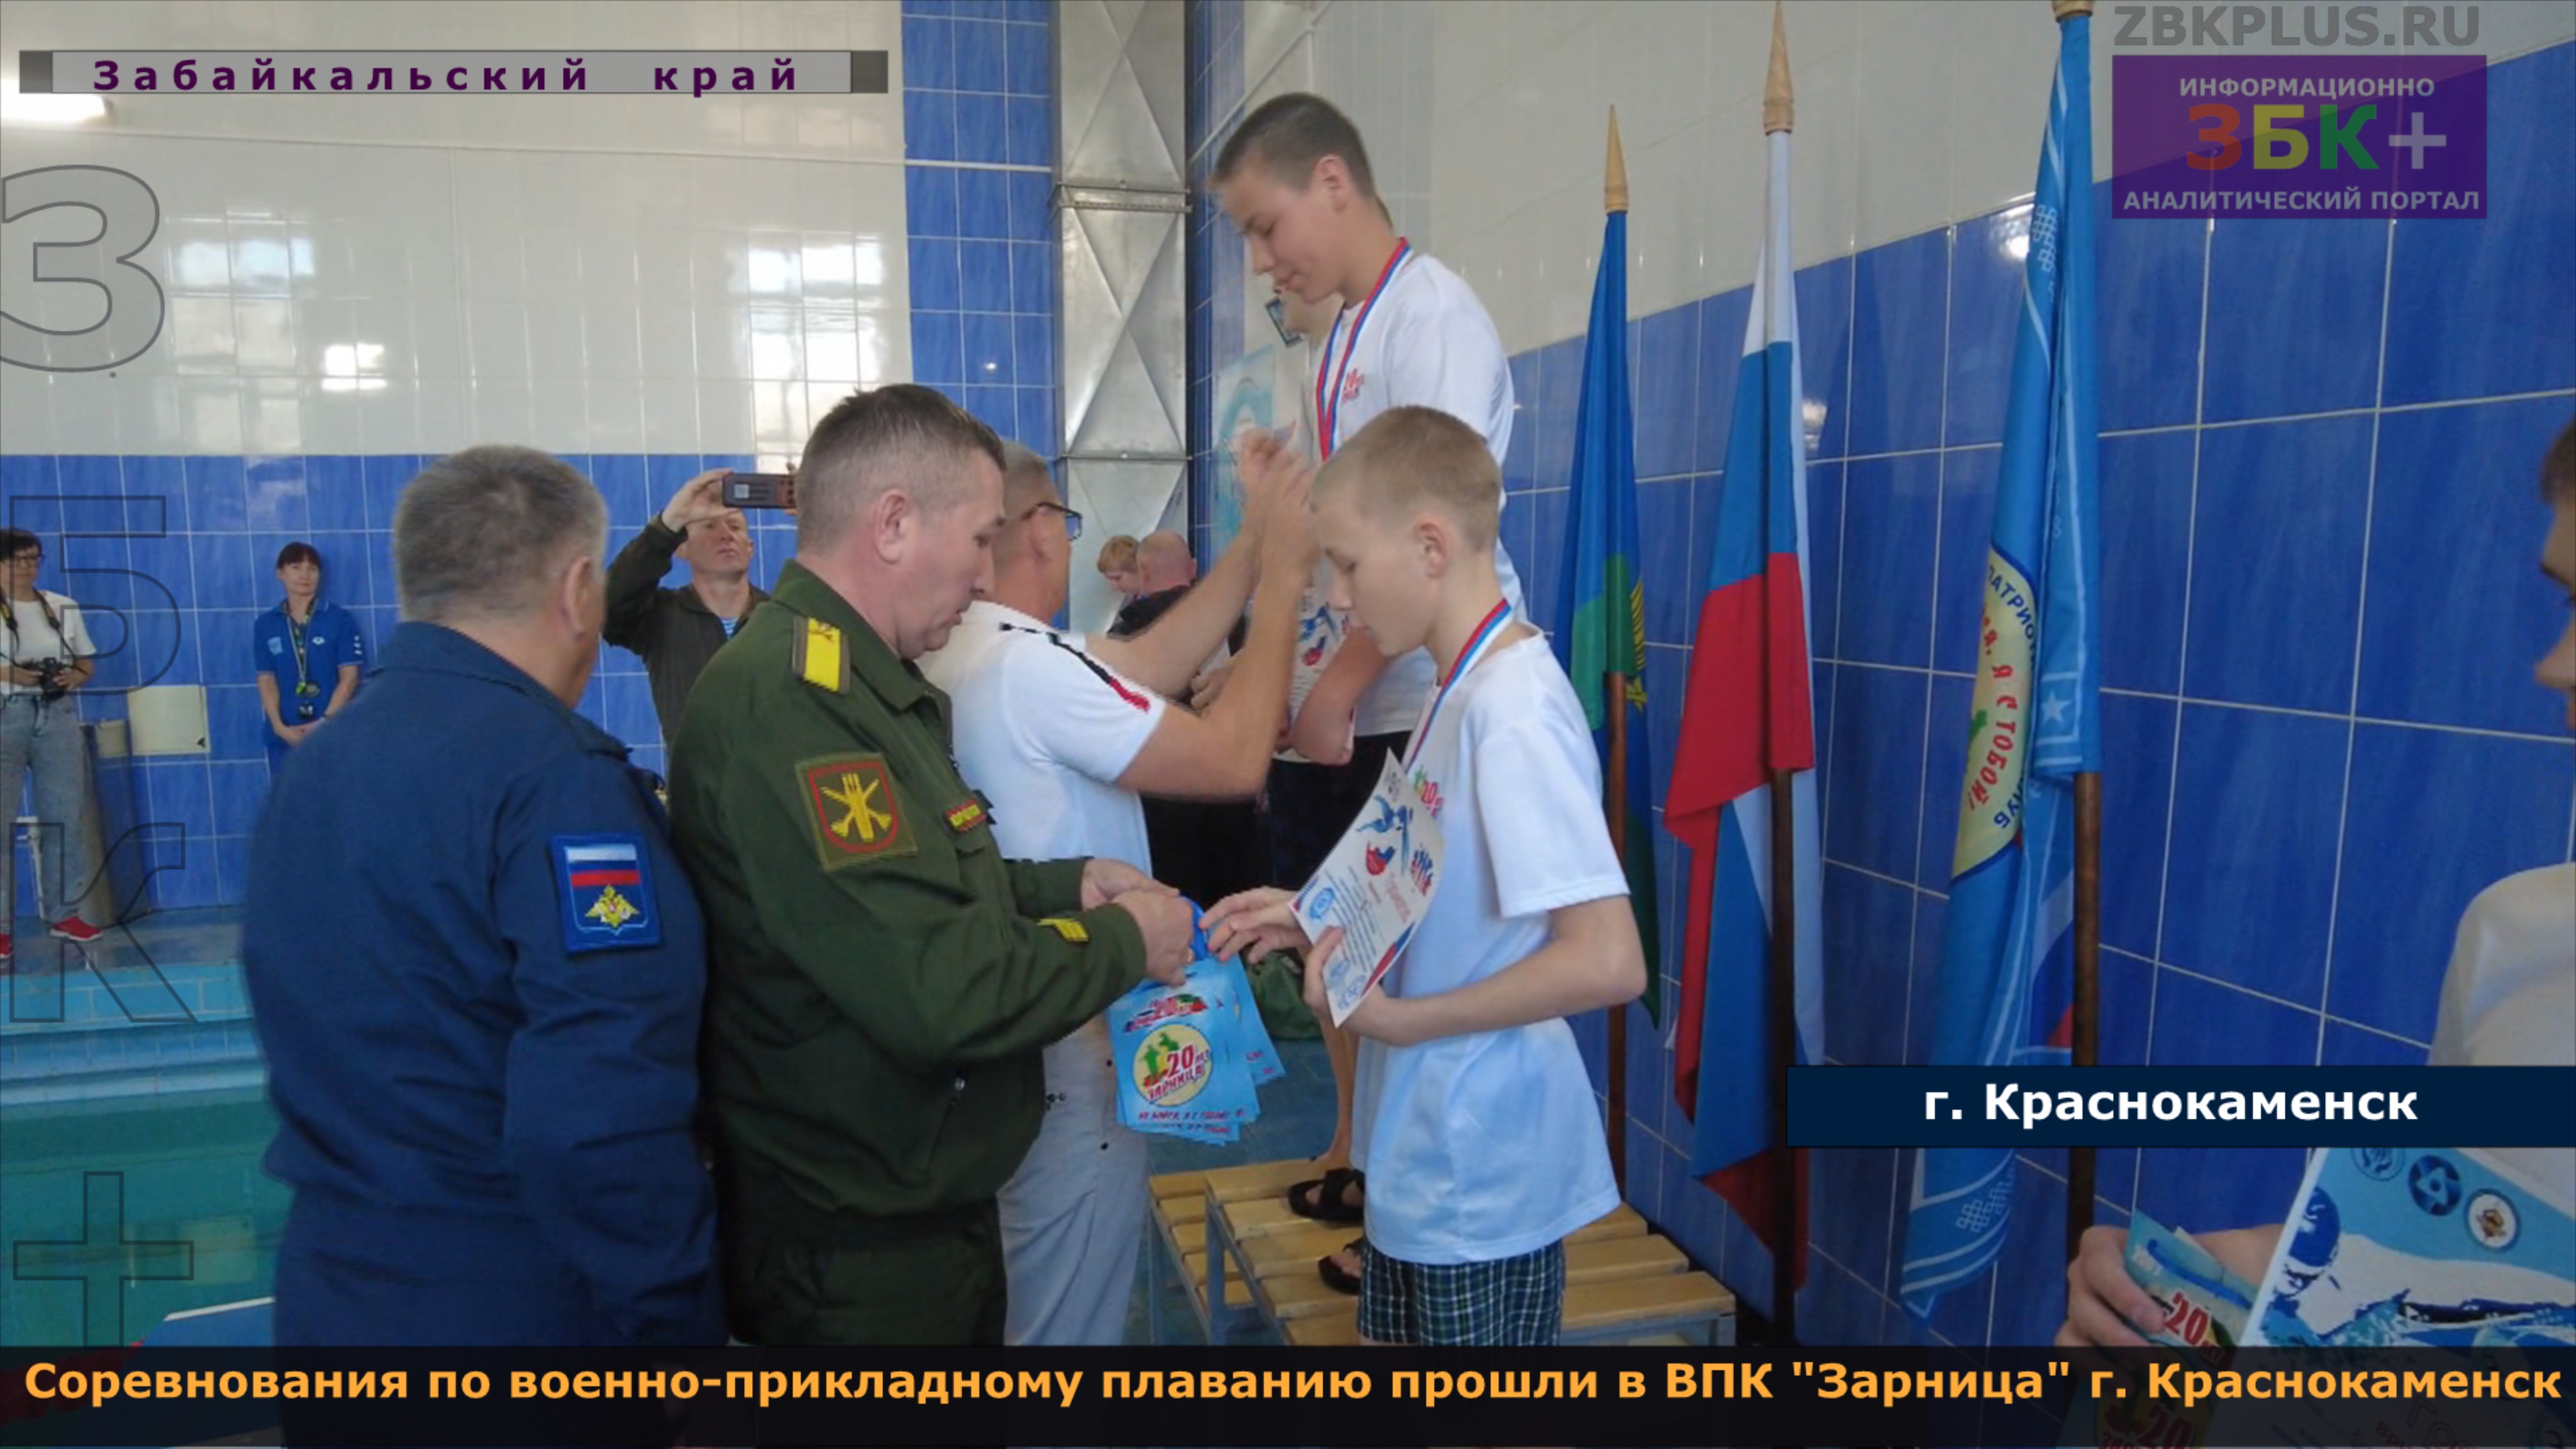 Соревнования по военно-прикладному плаванию прошли среди воспитанников ВПК "Зарница" в Краснокаменск